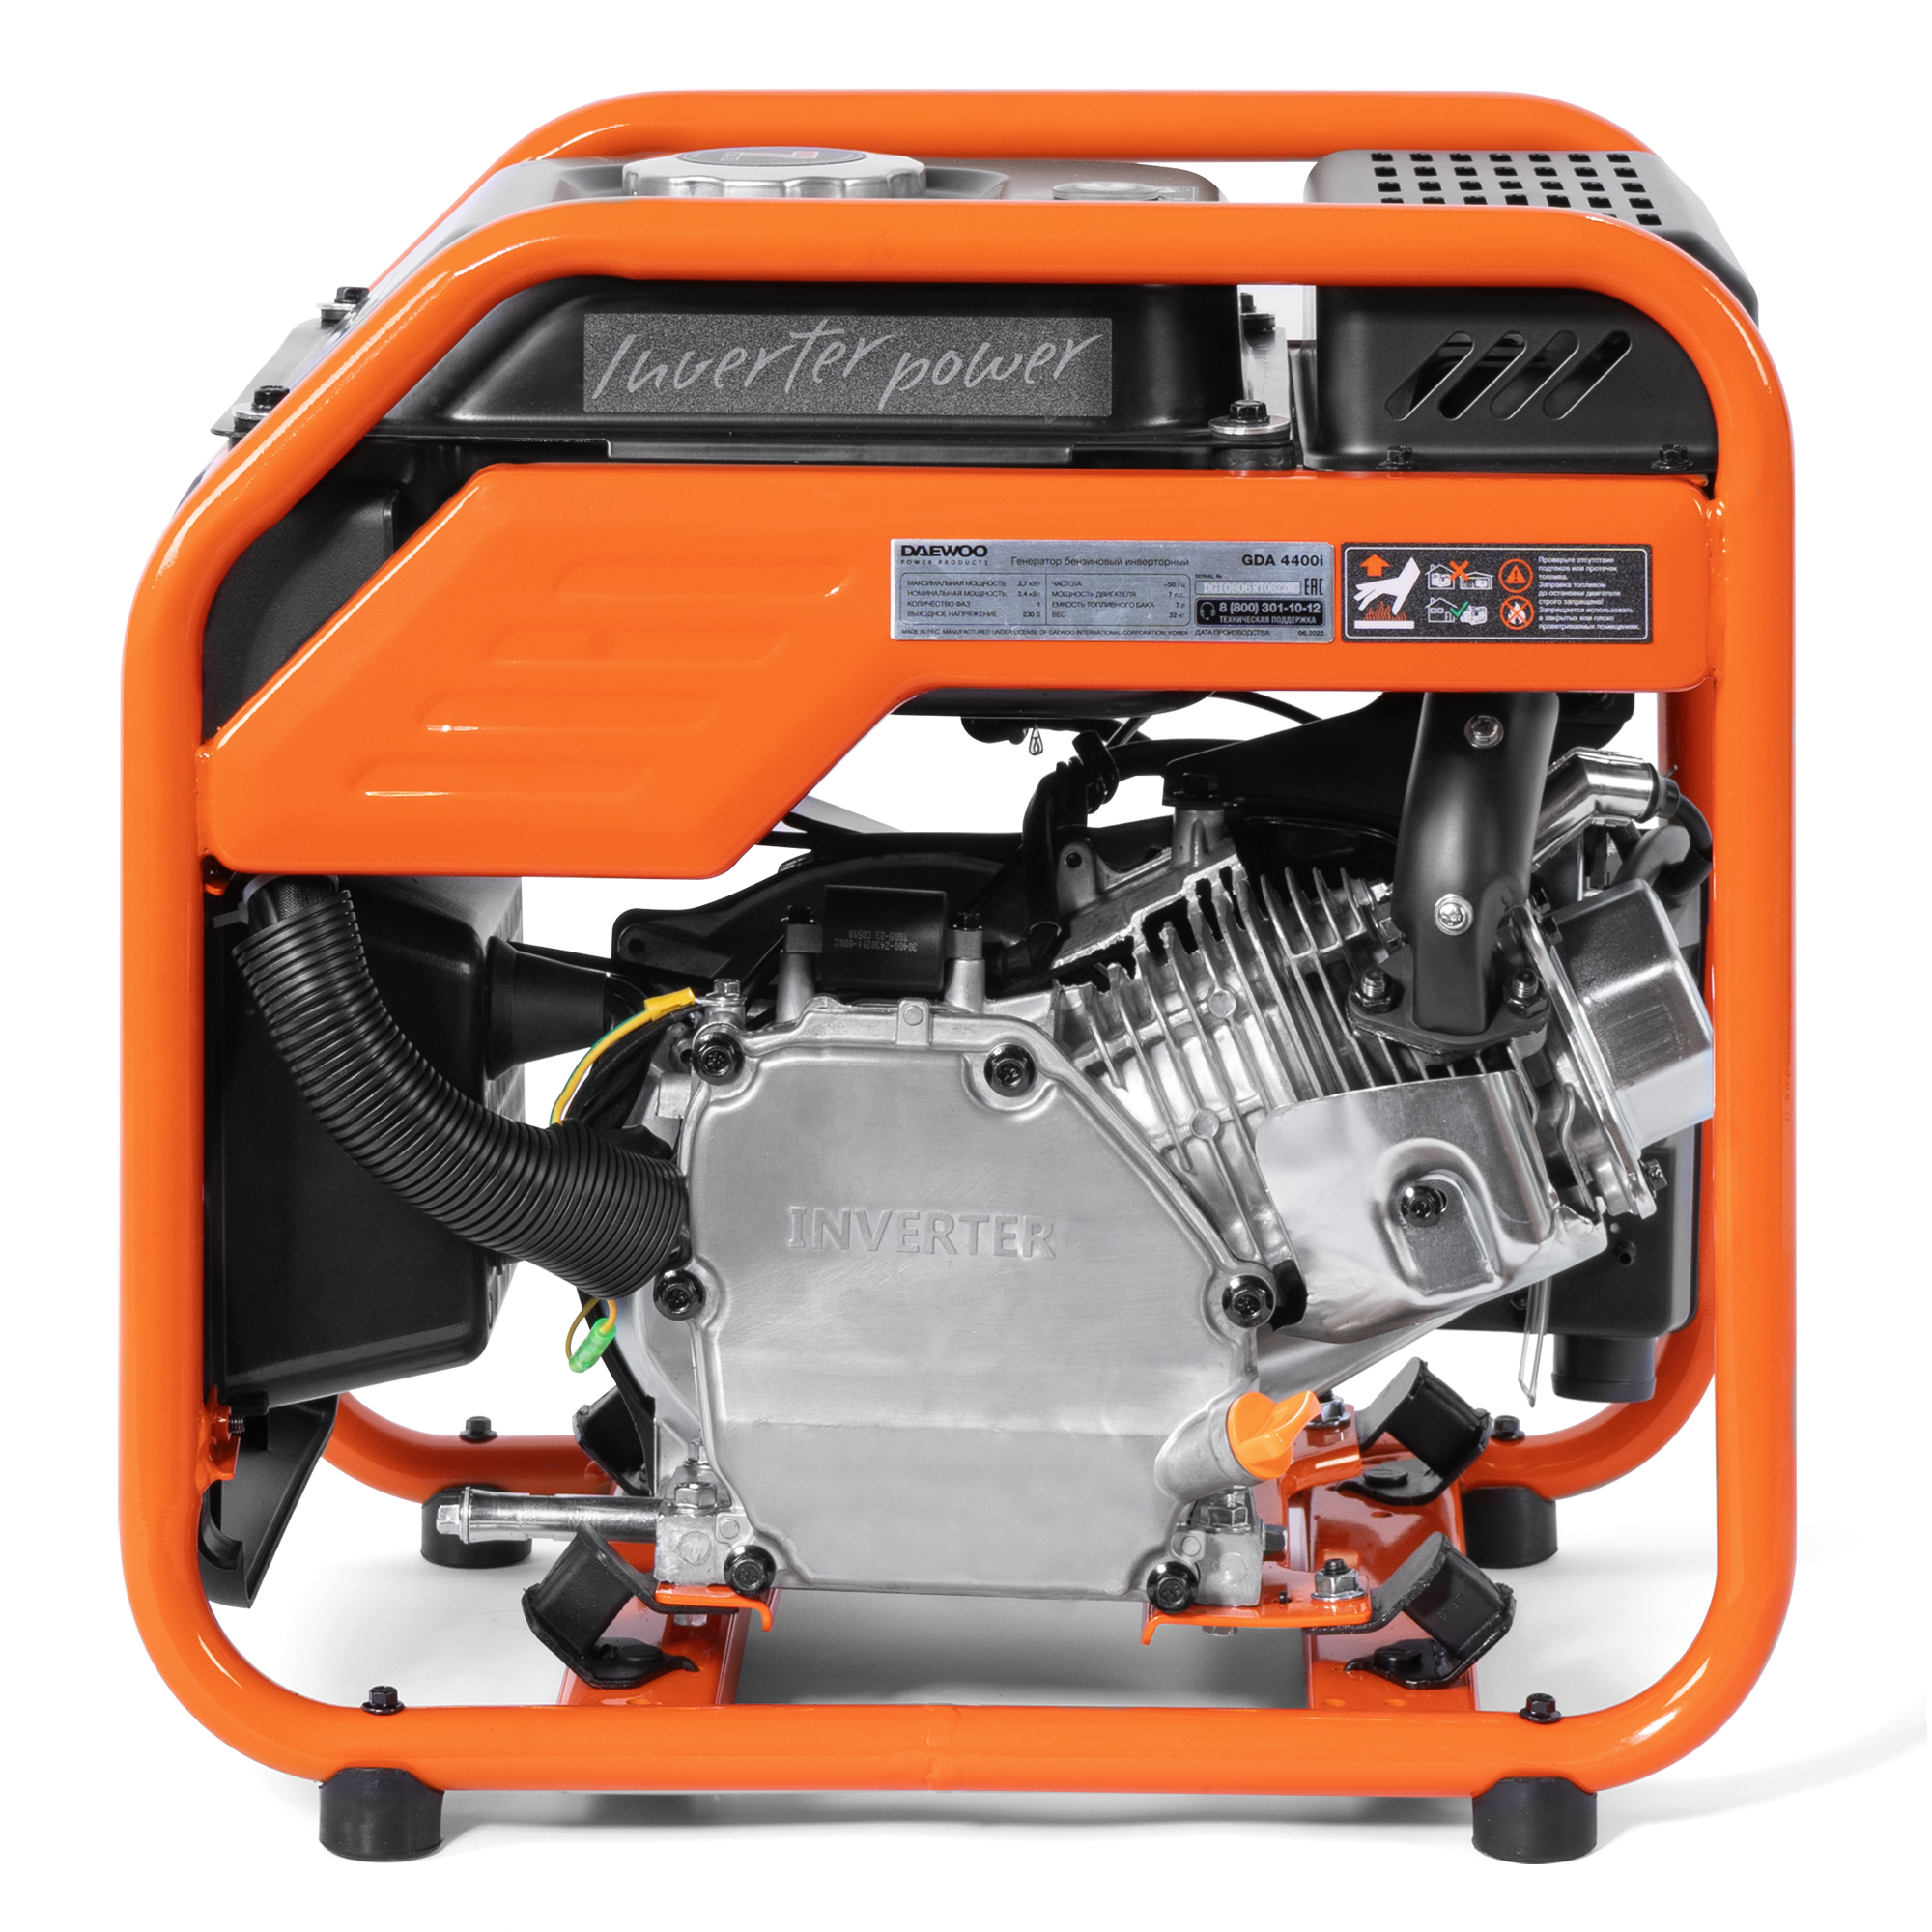 Бензиновый генератор Daewoo инверторный (GDA 4400I), цвет оранжевый series 215 - фото 2